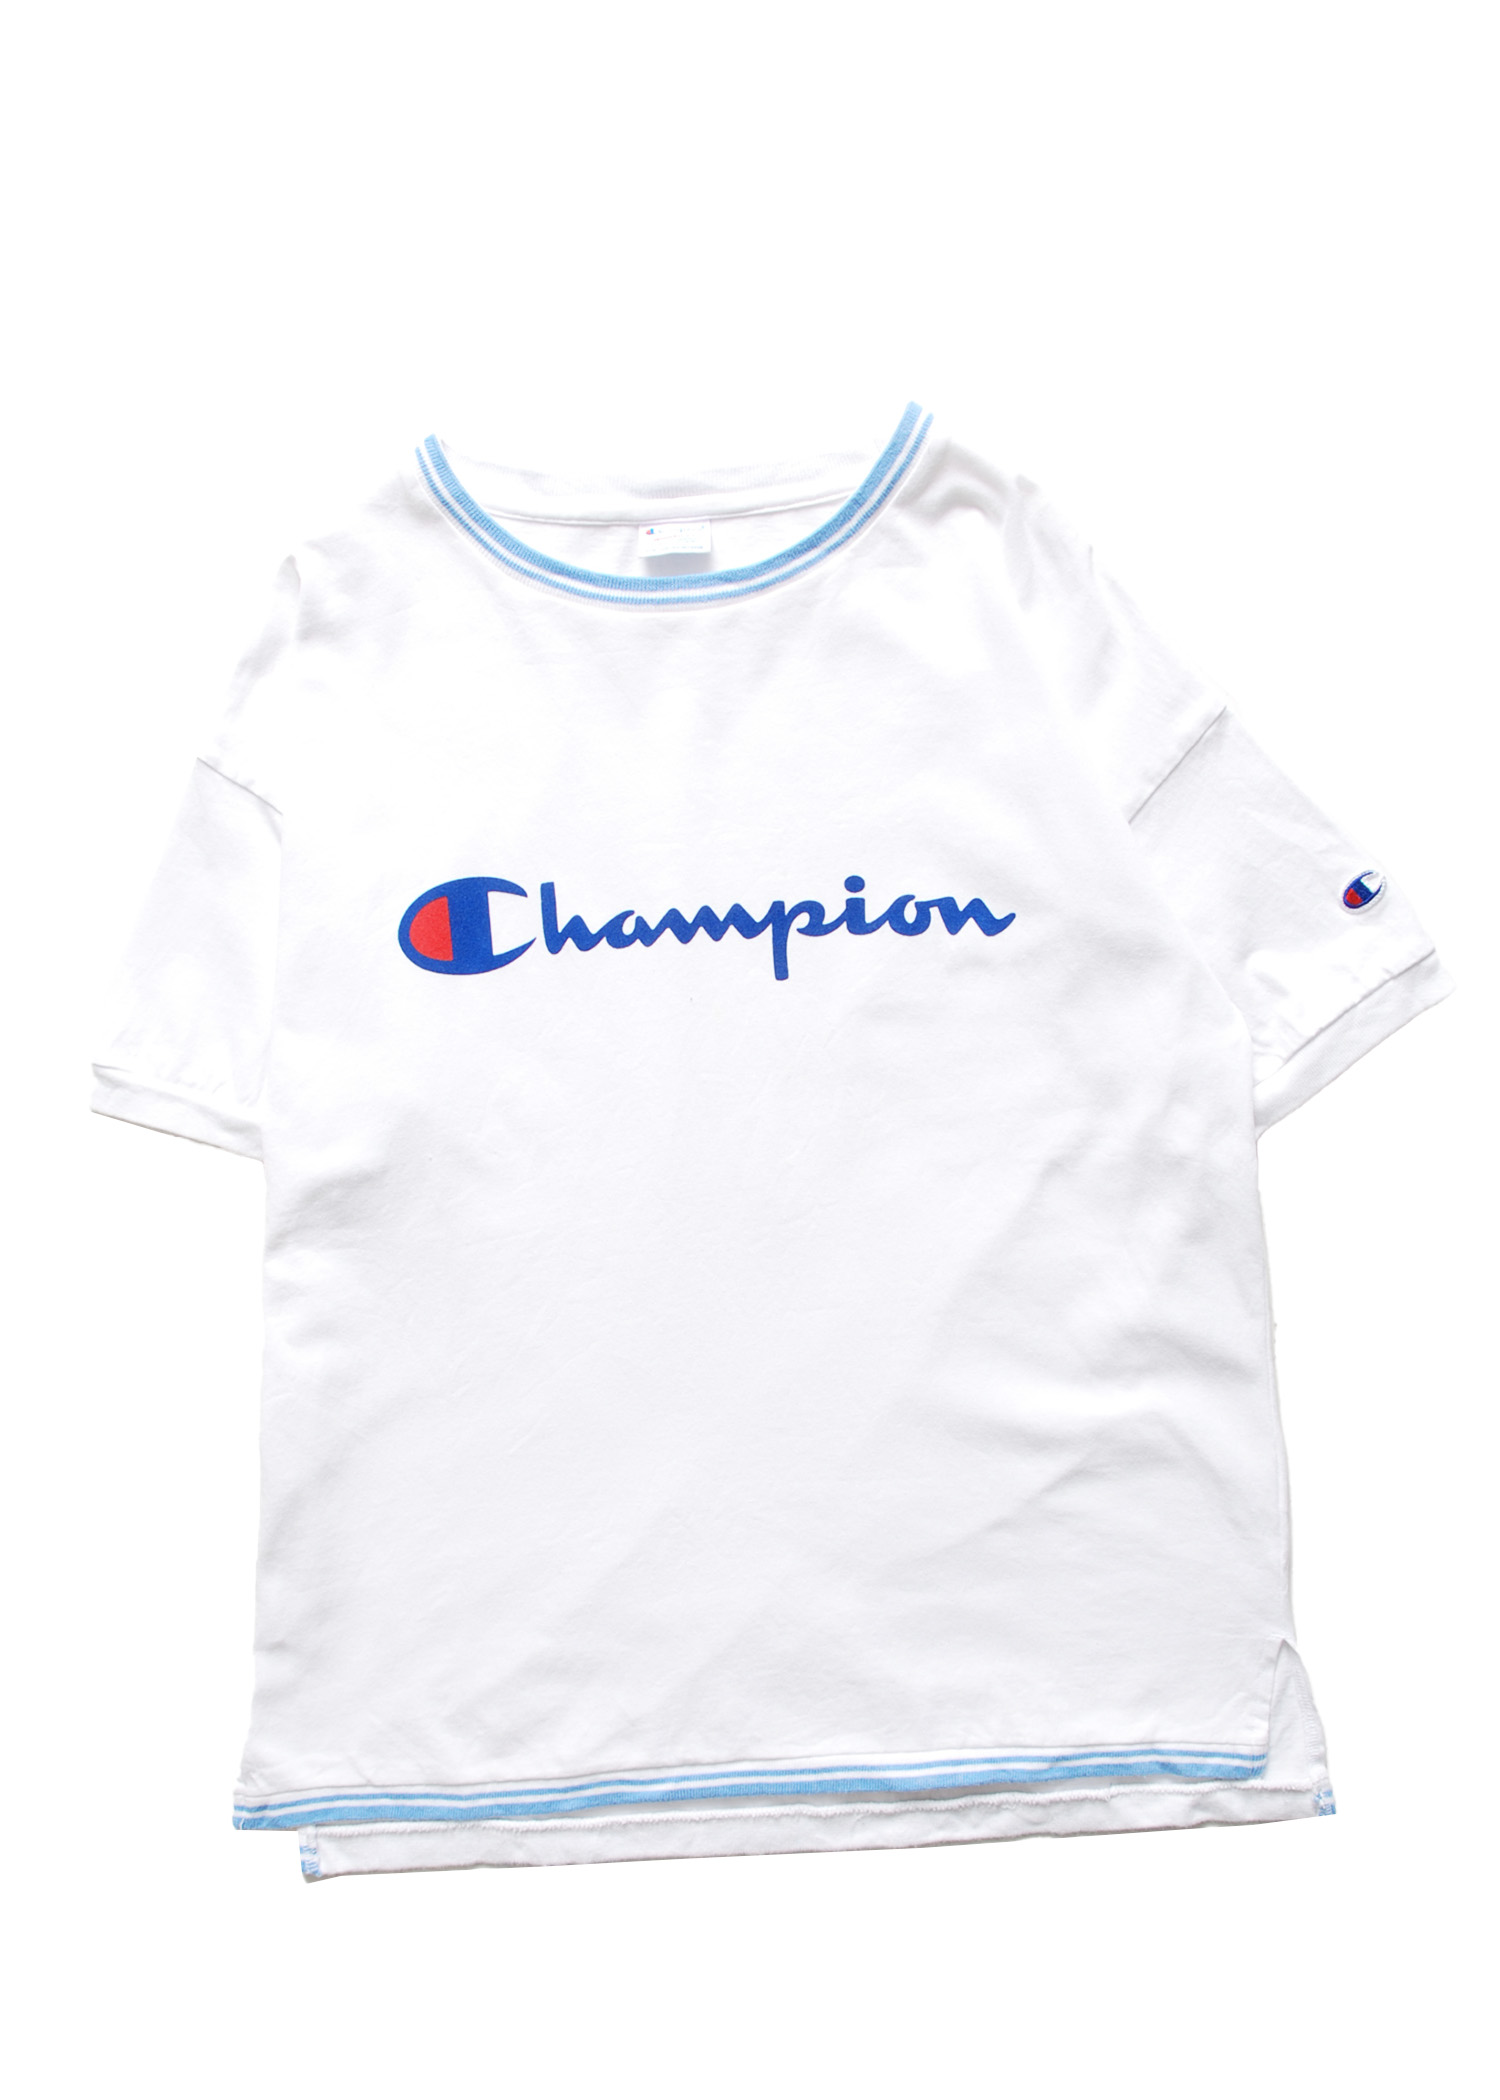 Champion t-shirts